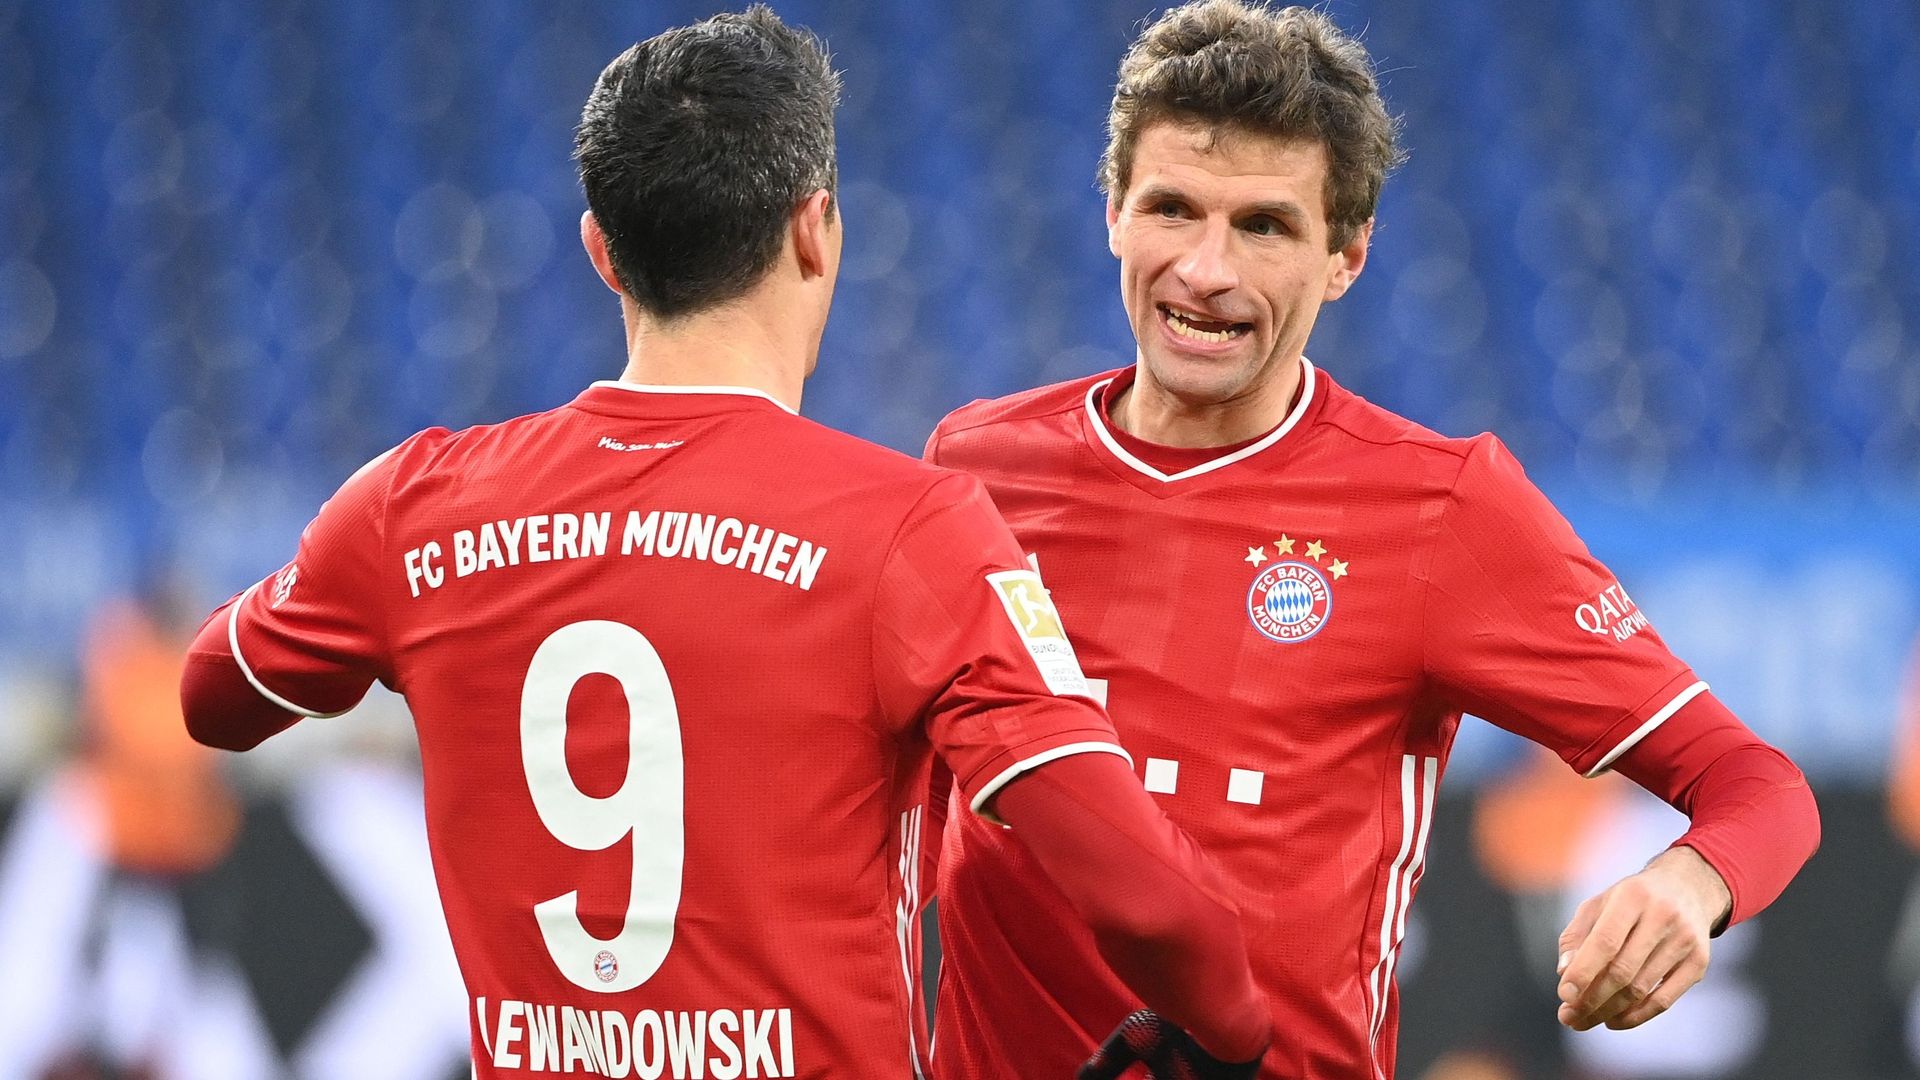 Bundesliga: Le Bayern Munich domine Cologne (5-1), Thomas Muller à l'assist à peine monté au jeu